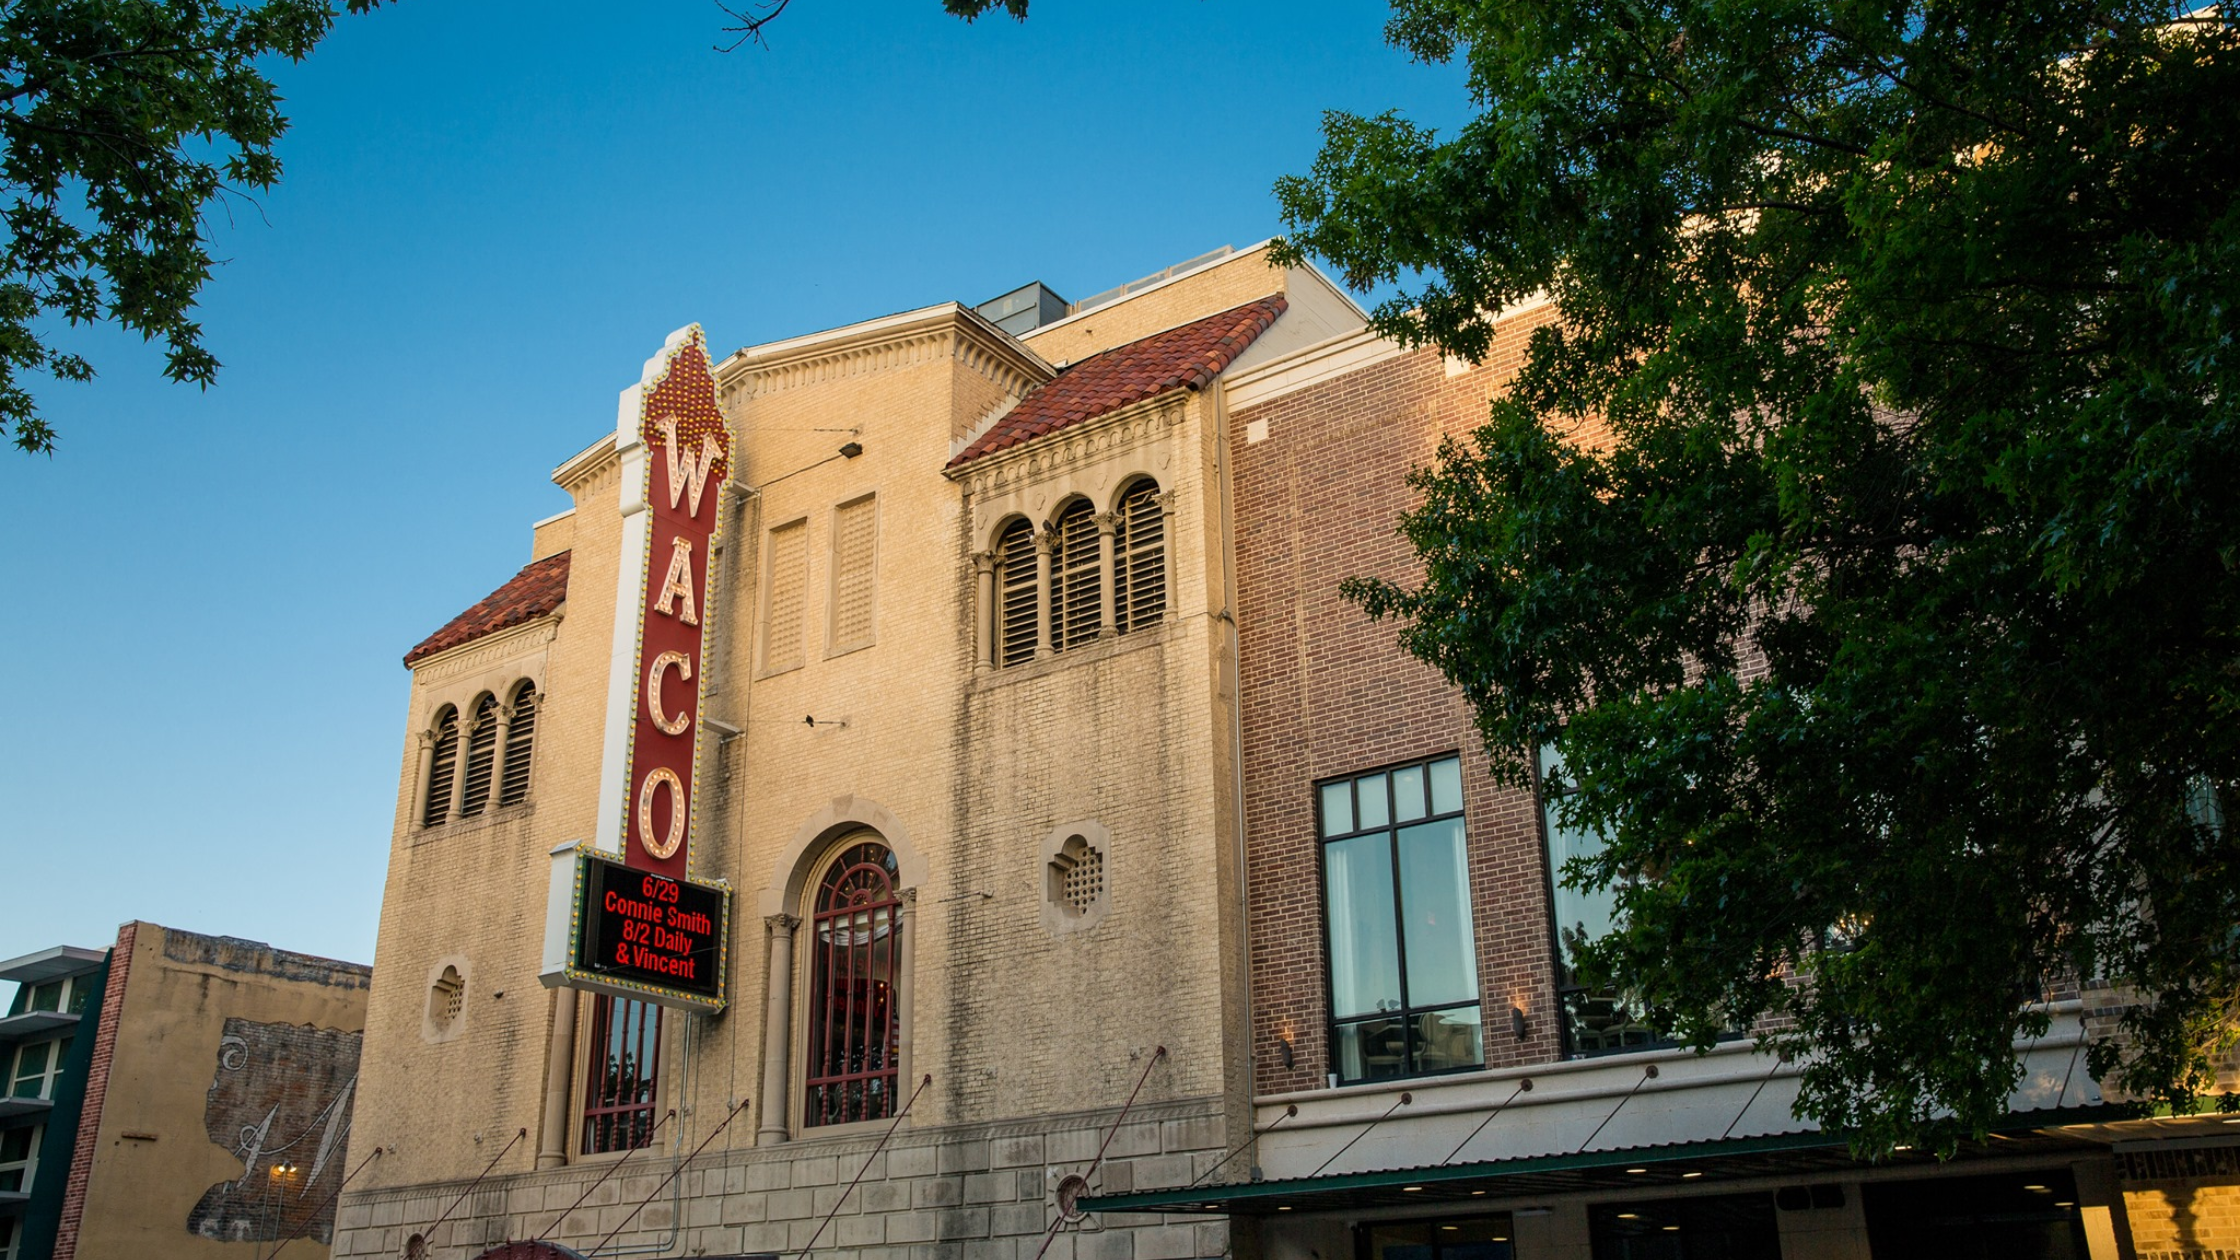 Hippodrome Theatre in Waco